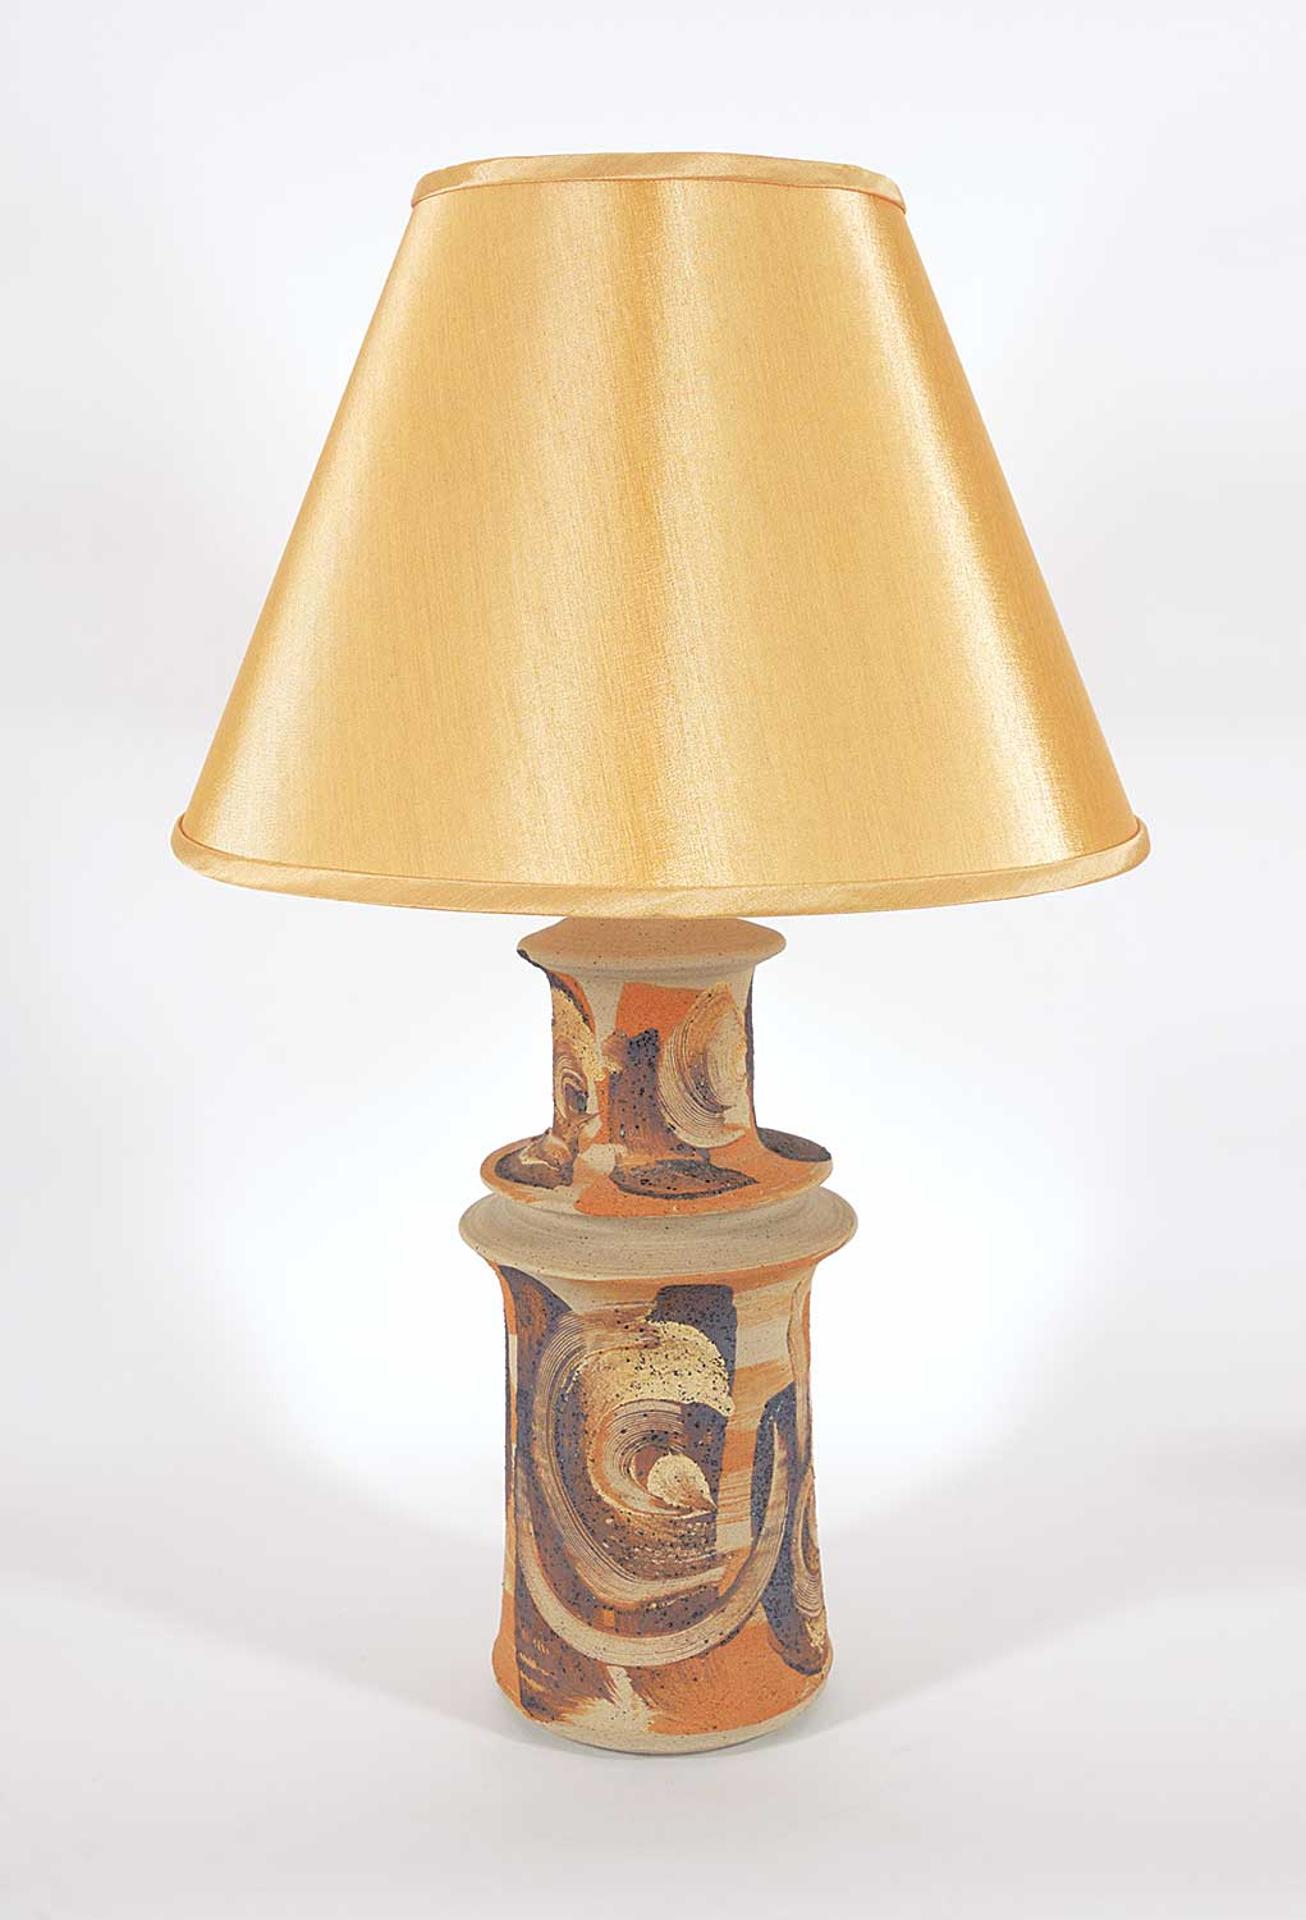 Jane van Alderwegen - Untitled - Brushed Swirl Lamp